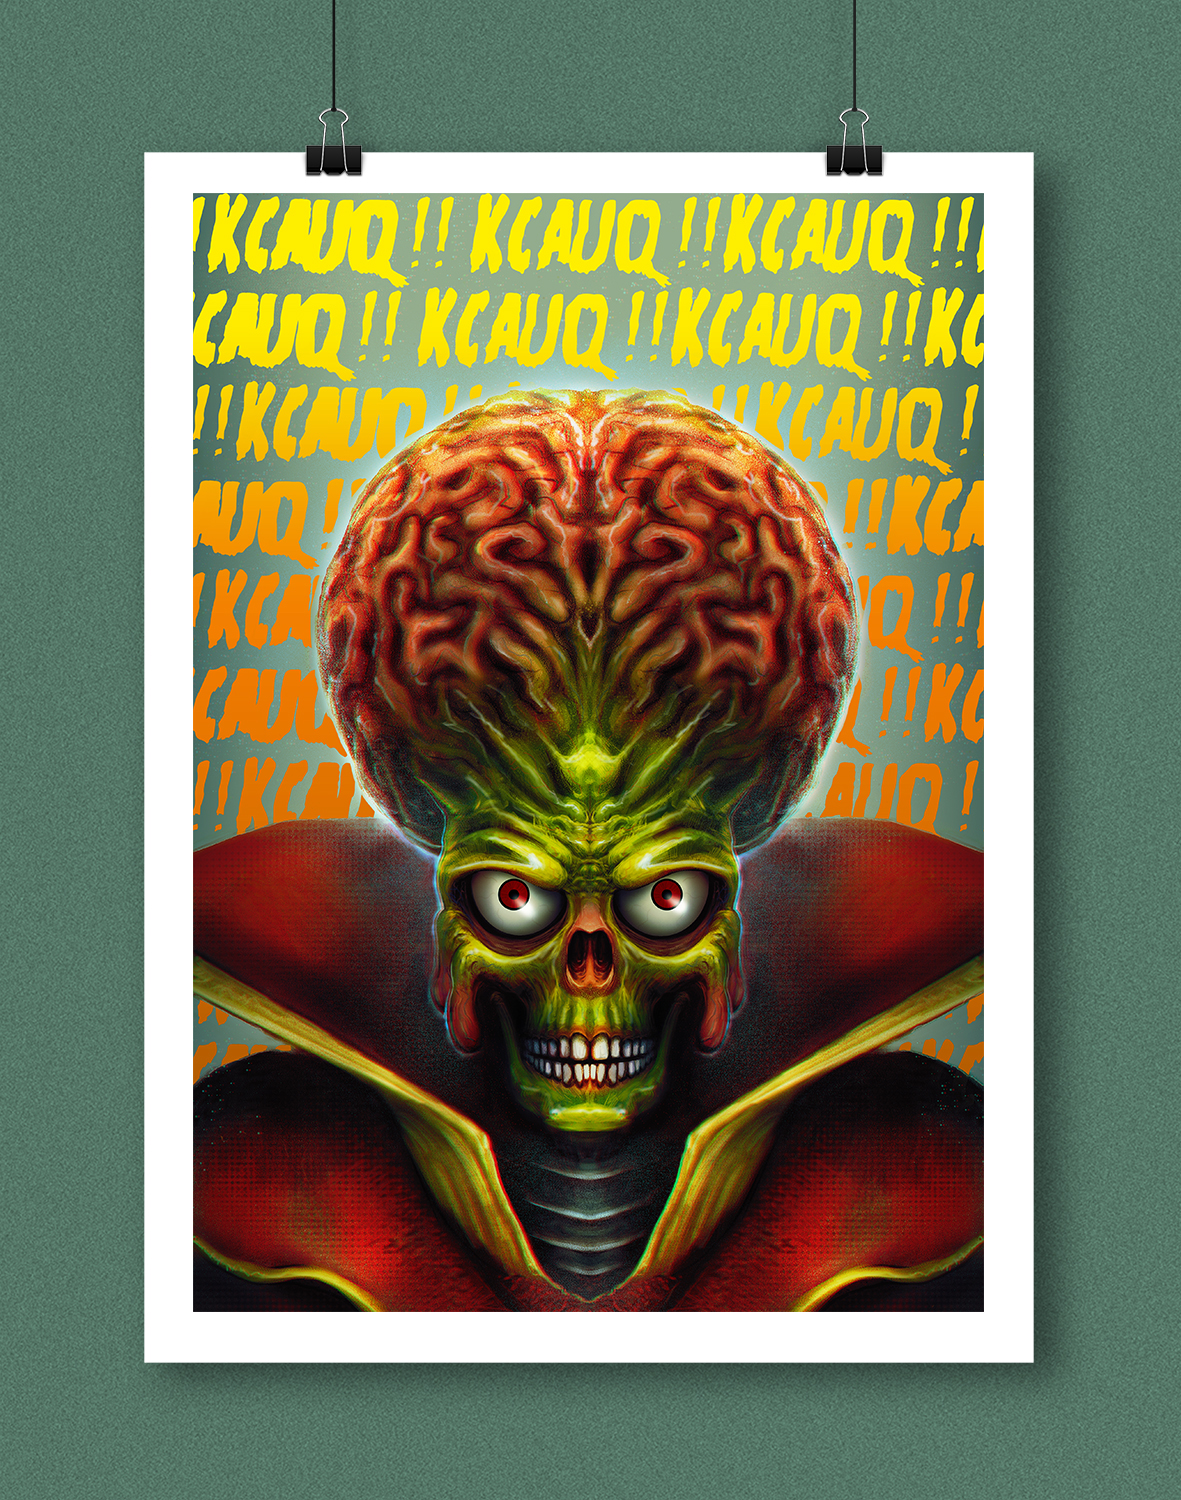 mars attacks martians alien movie pop culture poster